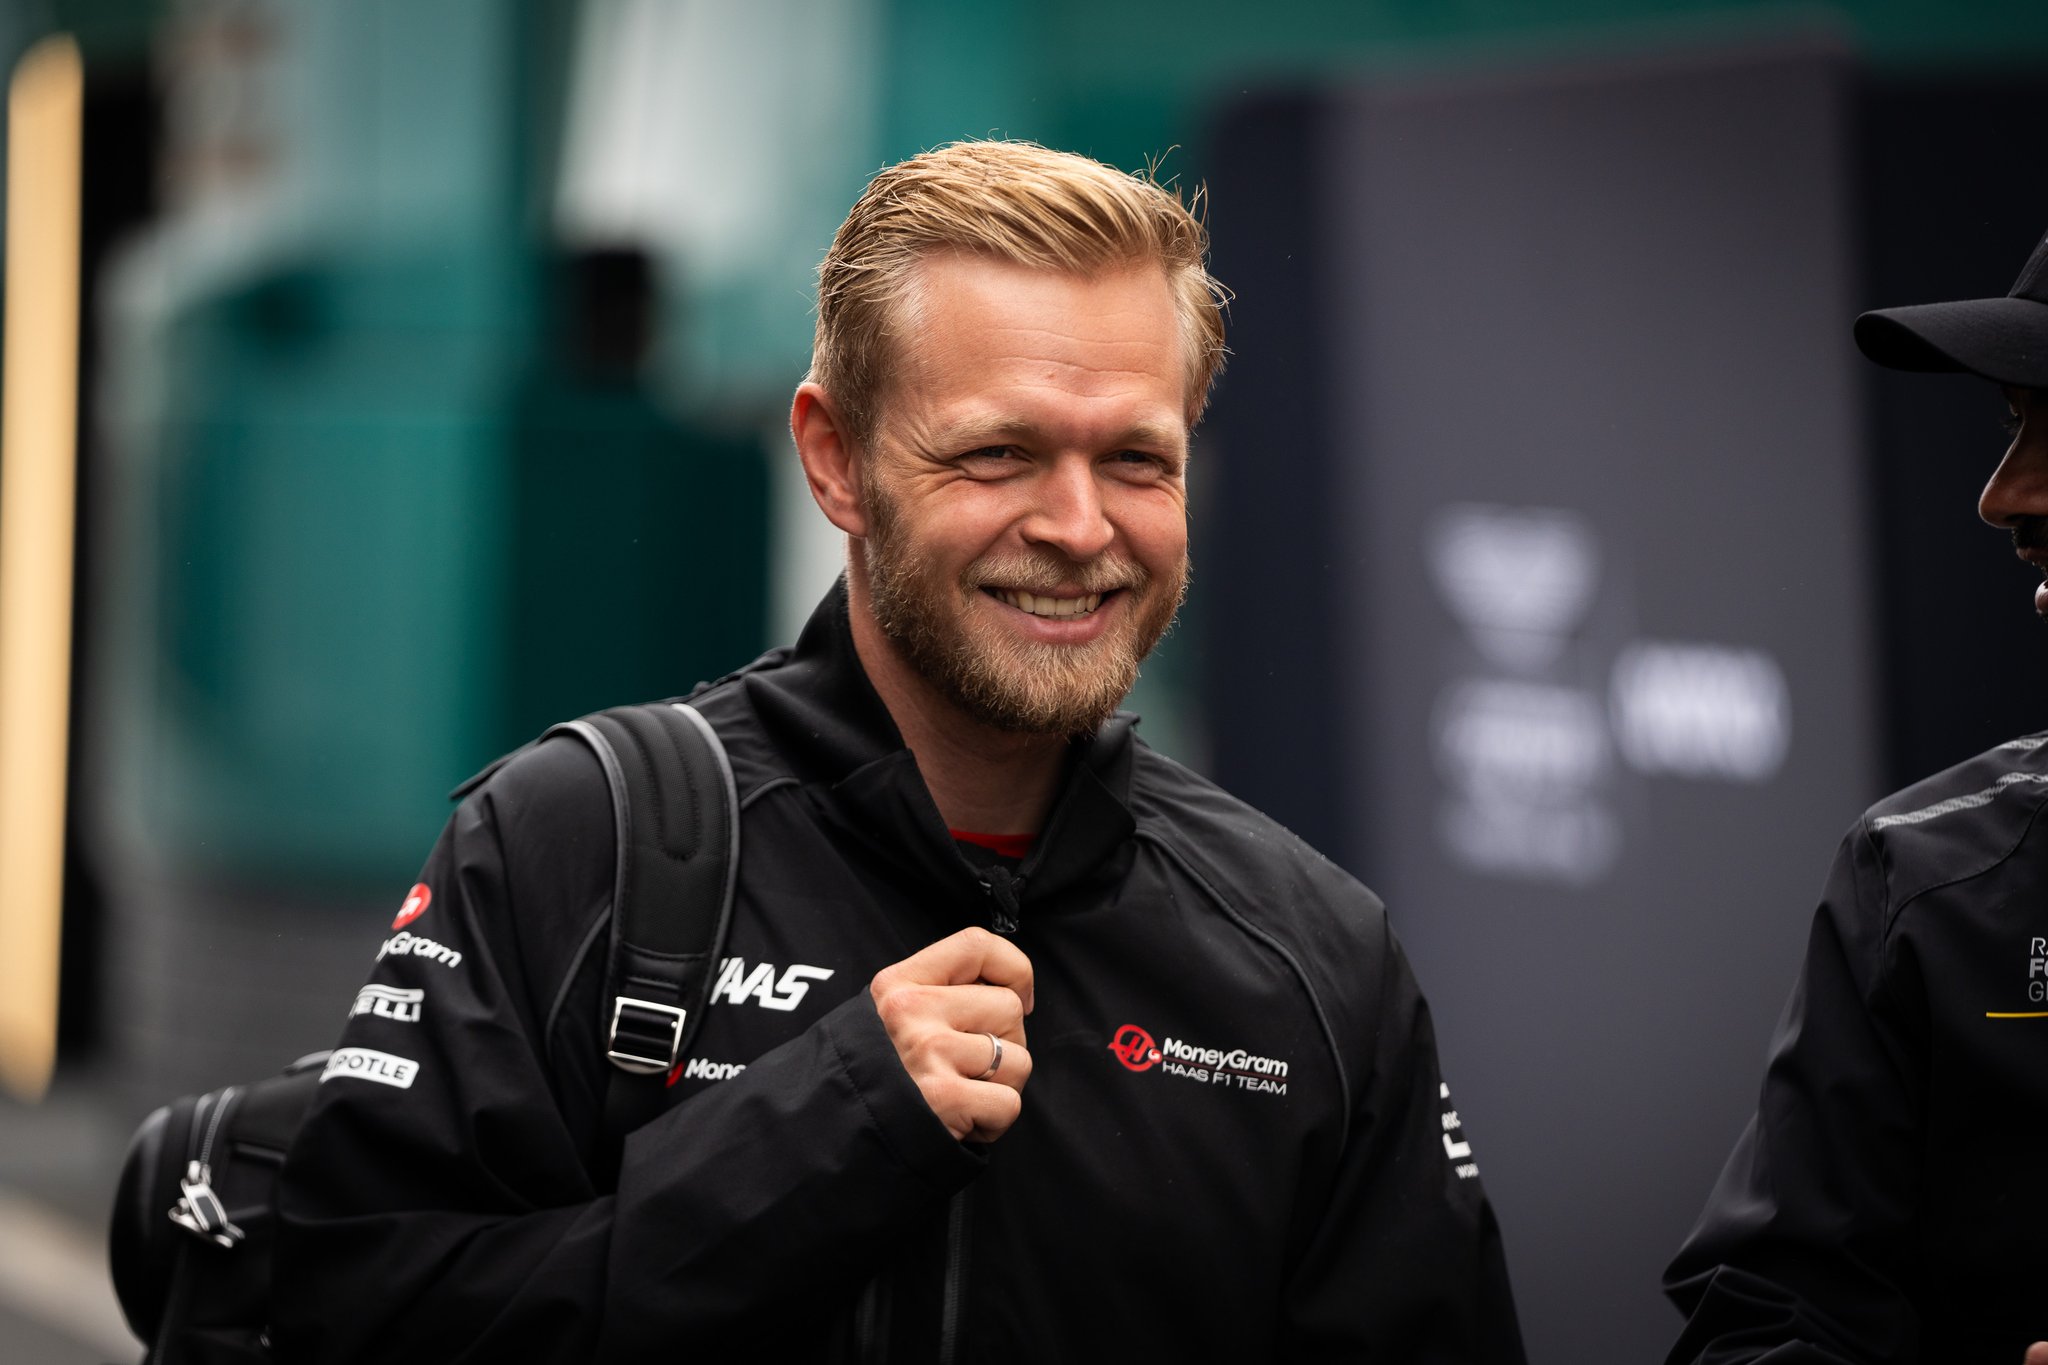 Magnussen reconhece resultados abaixo, mas agradece Haas por “mais uma chance” na F1